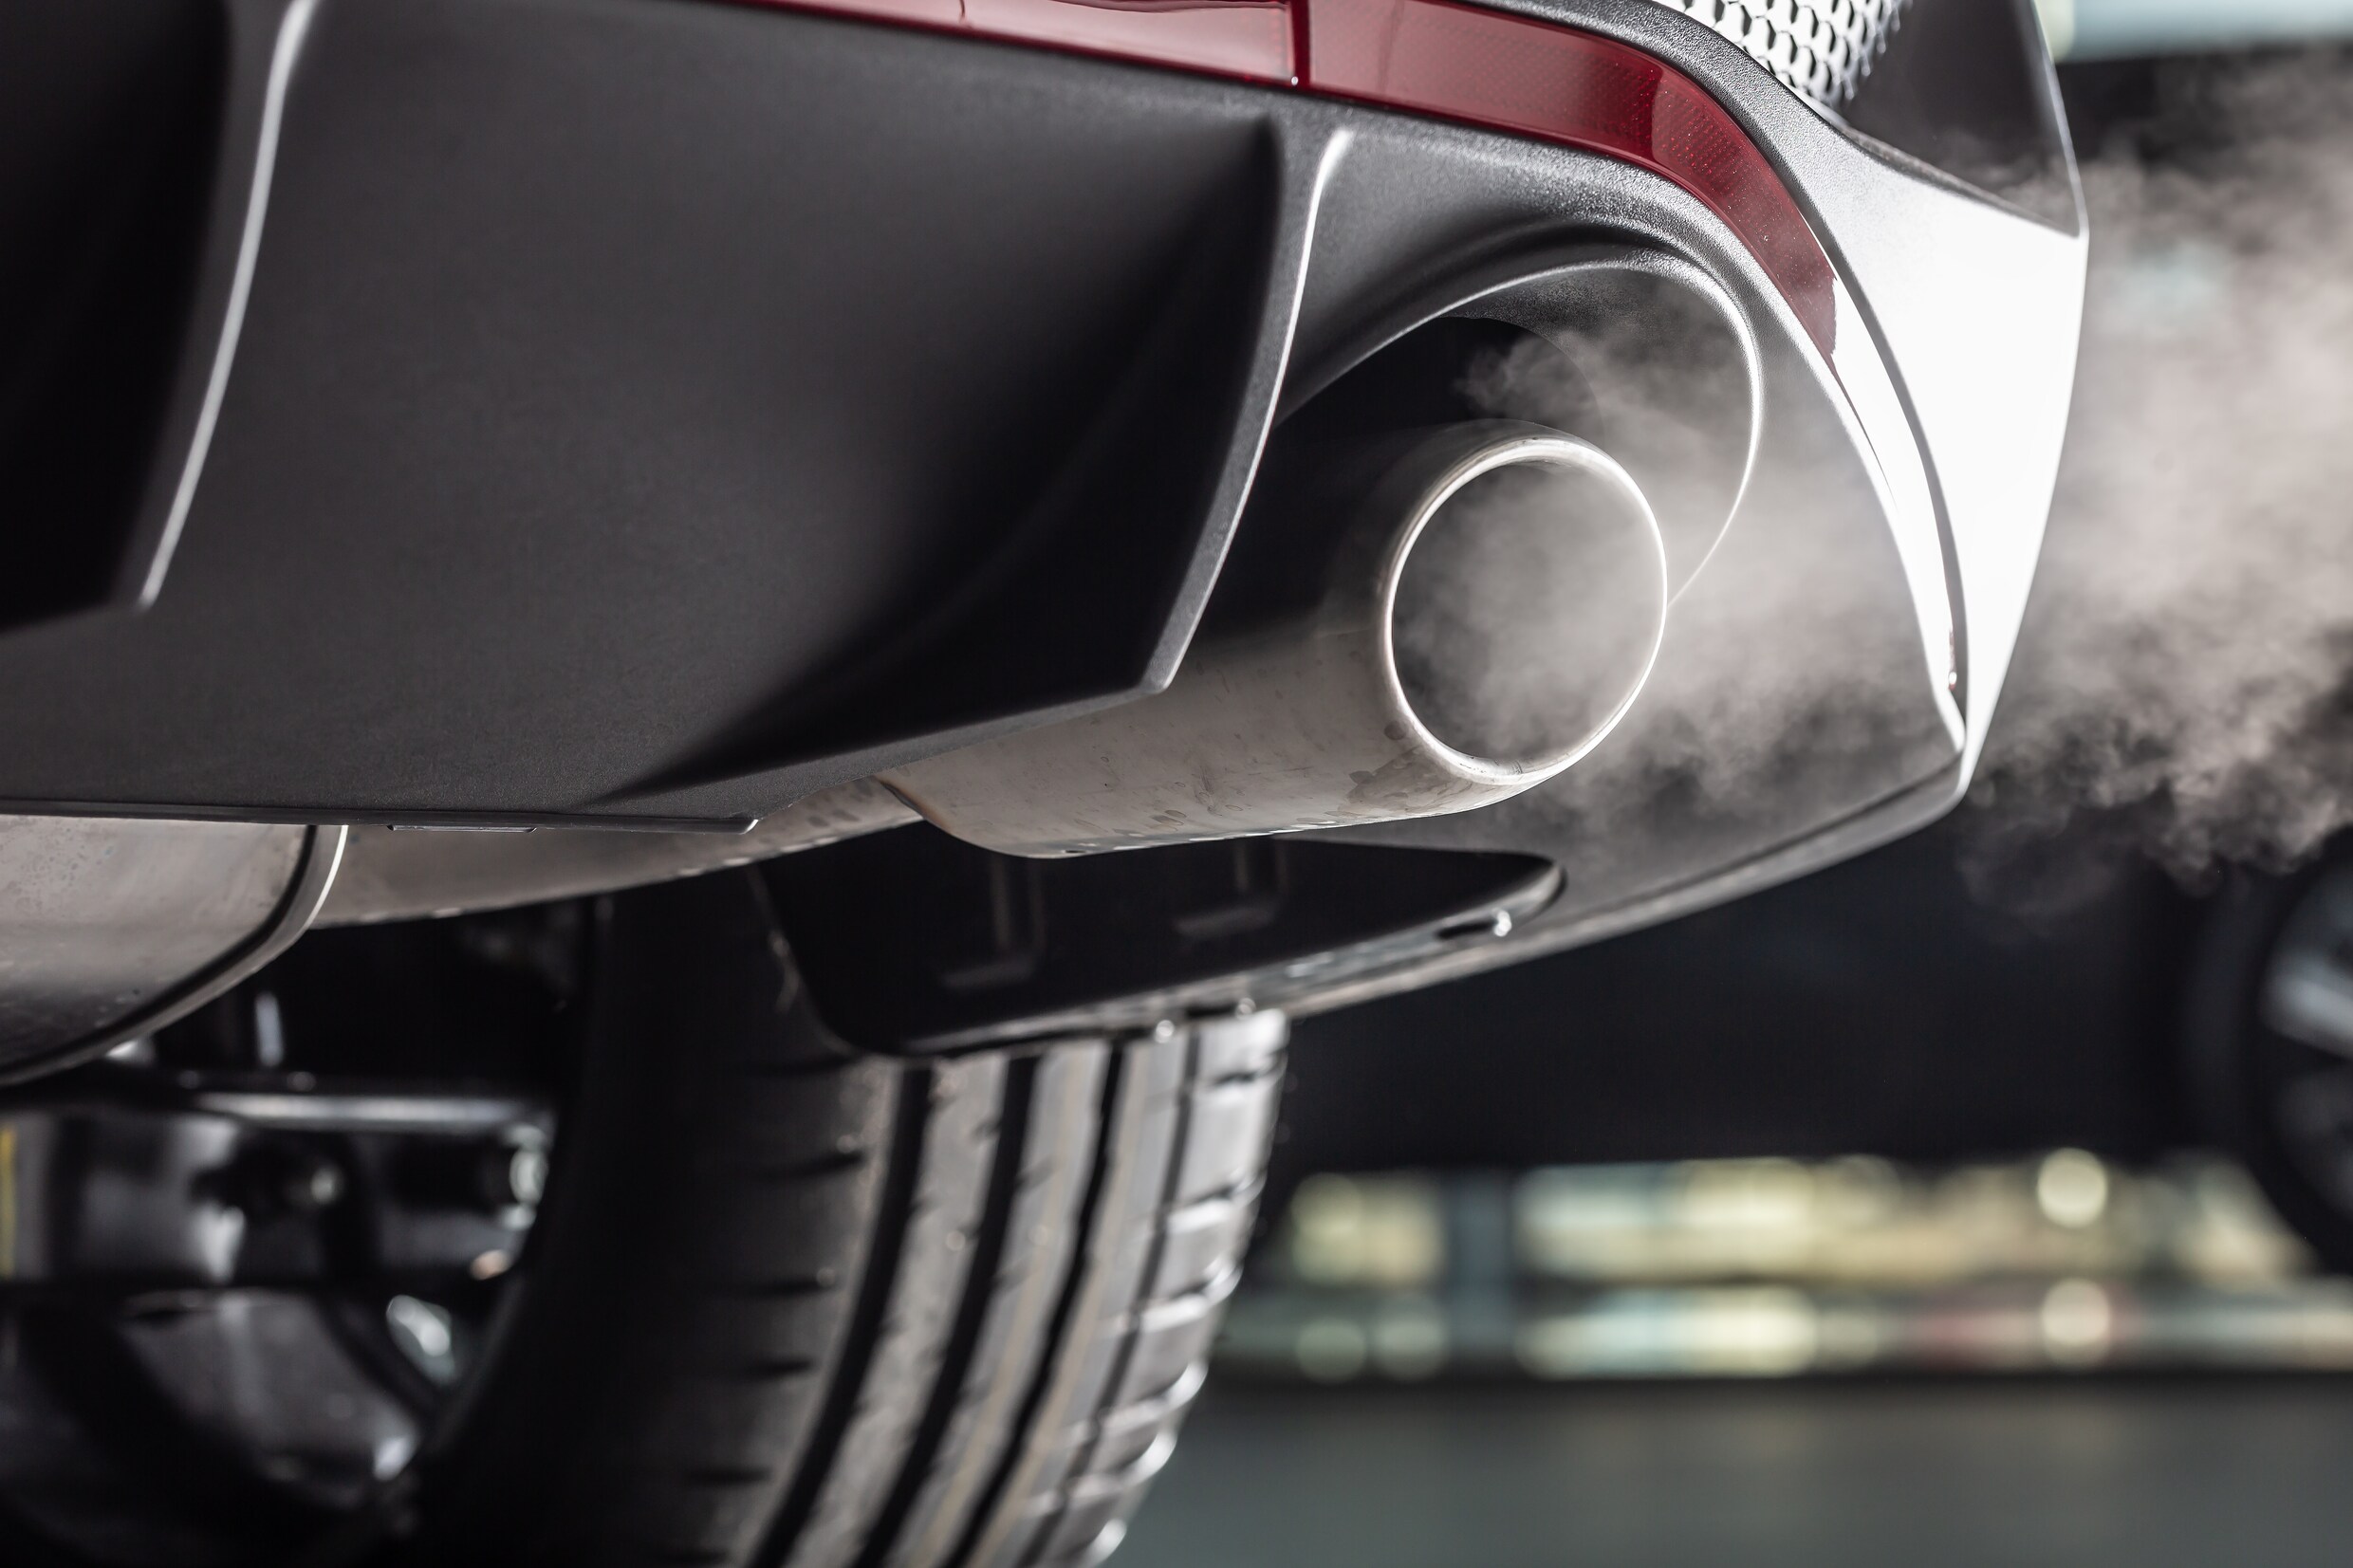 Krijgt dieselgate een staartje? Rapport meldt miljoenen wagens met ‘verdachte’ en ‘extreem verdachte’ emissies